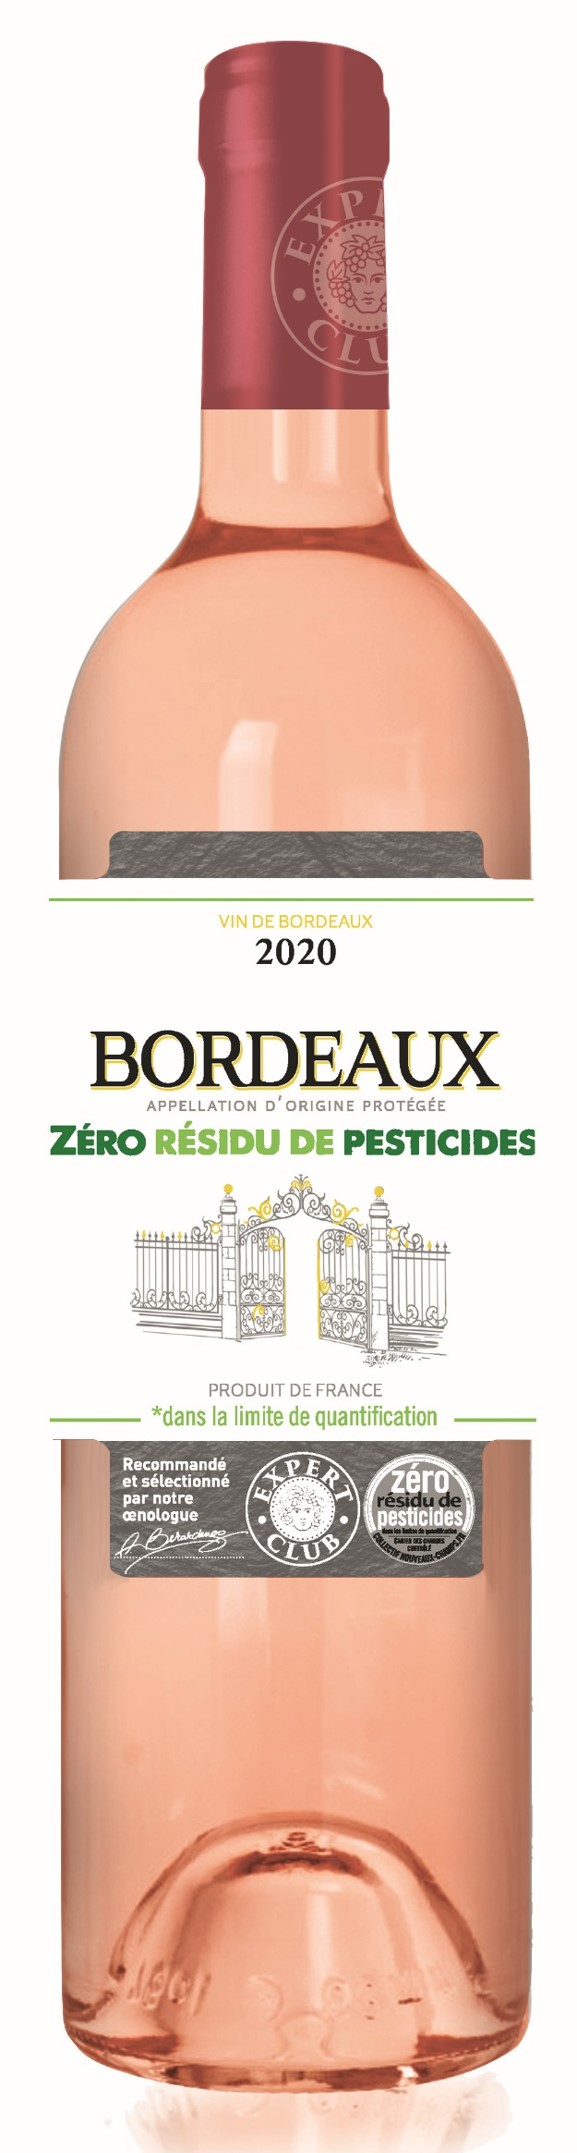 Vins zéro résidus de pesticides